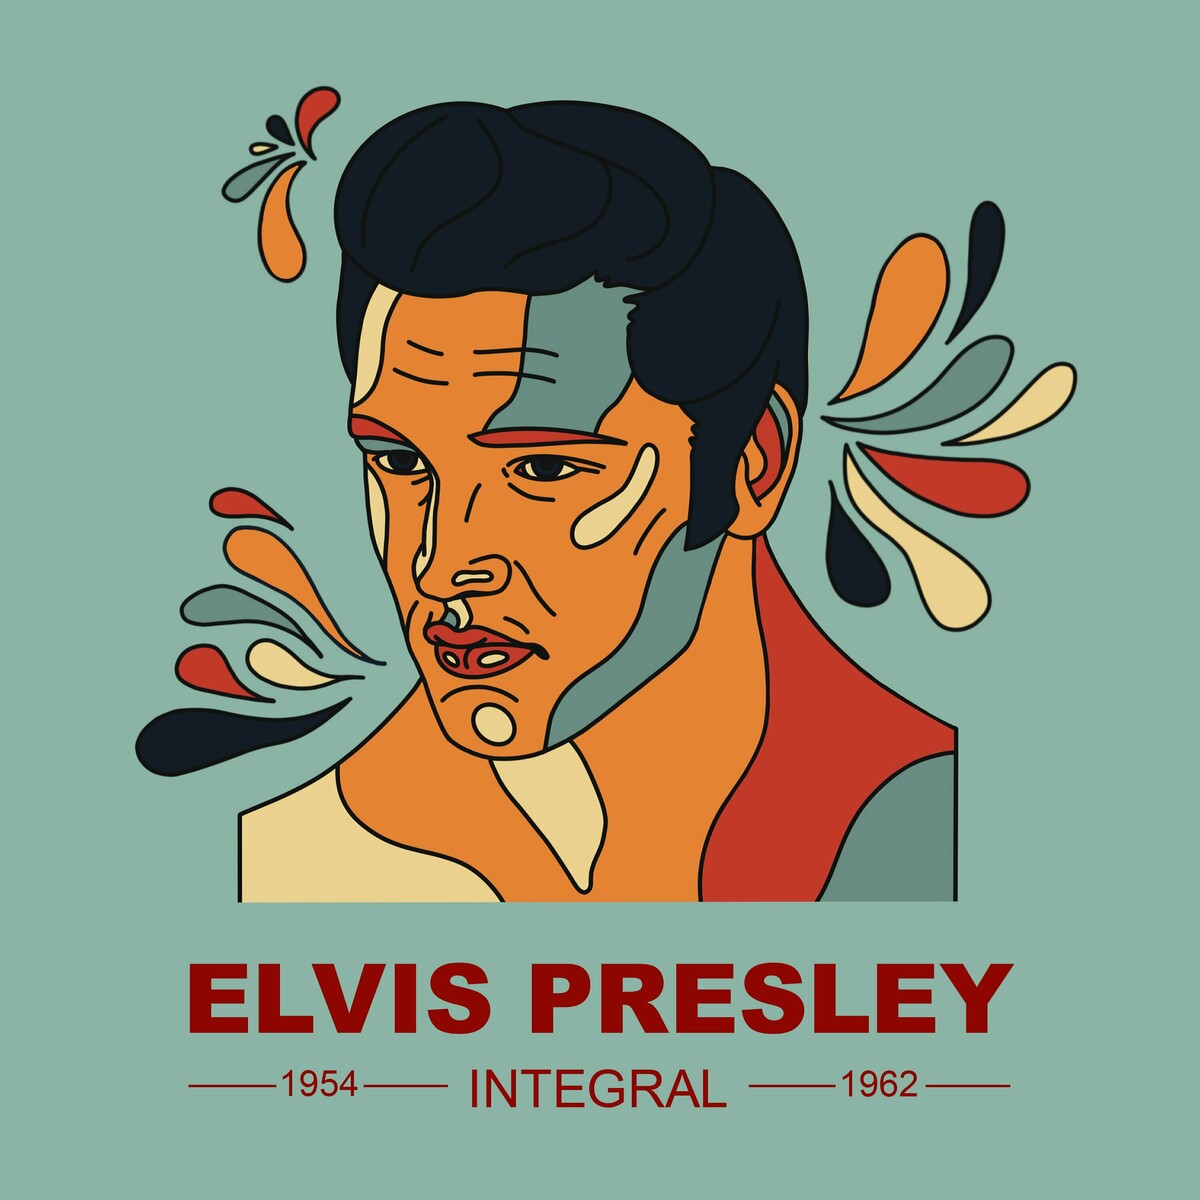 Elvis Presley - ELVIS PRESLEY INTEGRAL 1954 - 1962